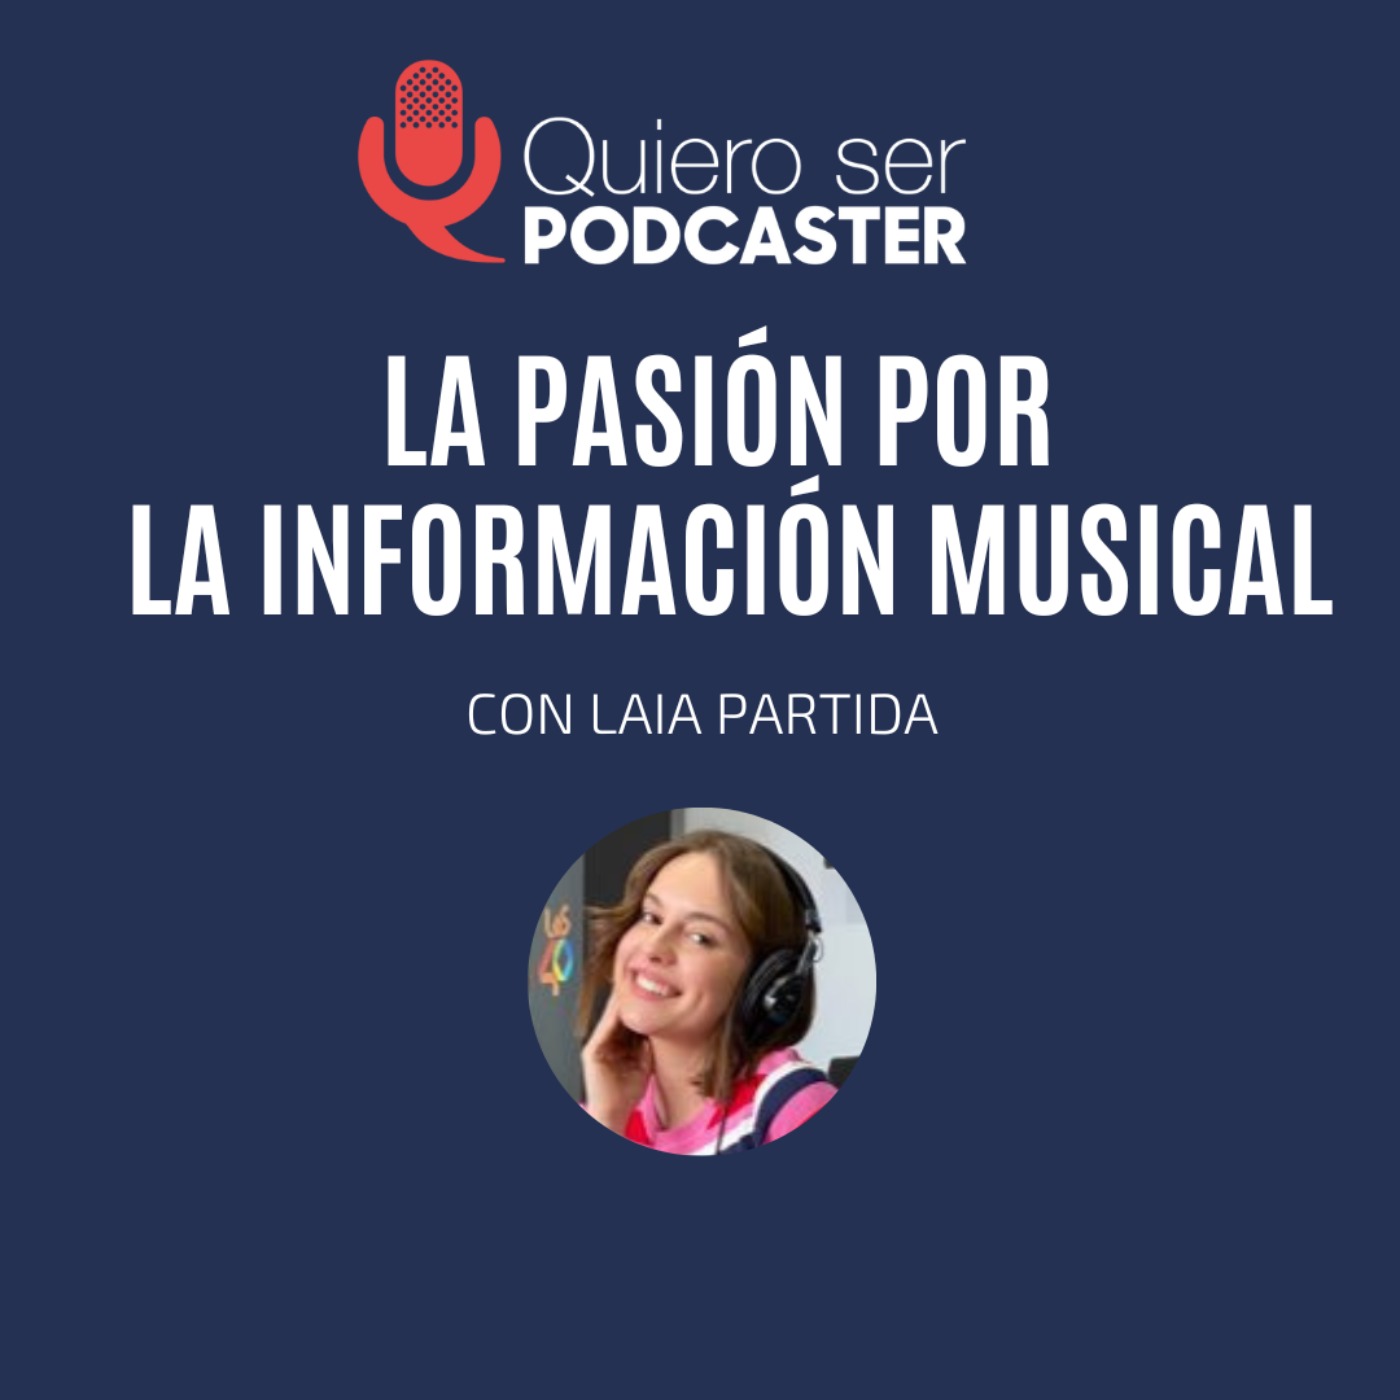 La pasión por la información musical, con @LaiaPartida